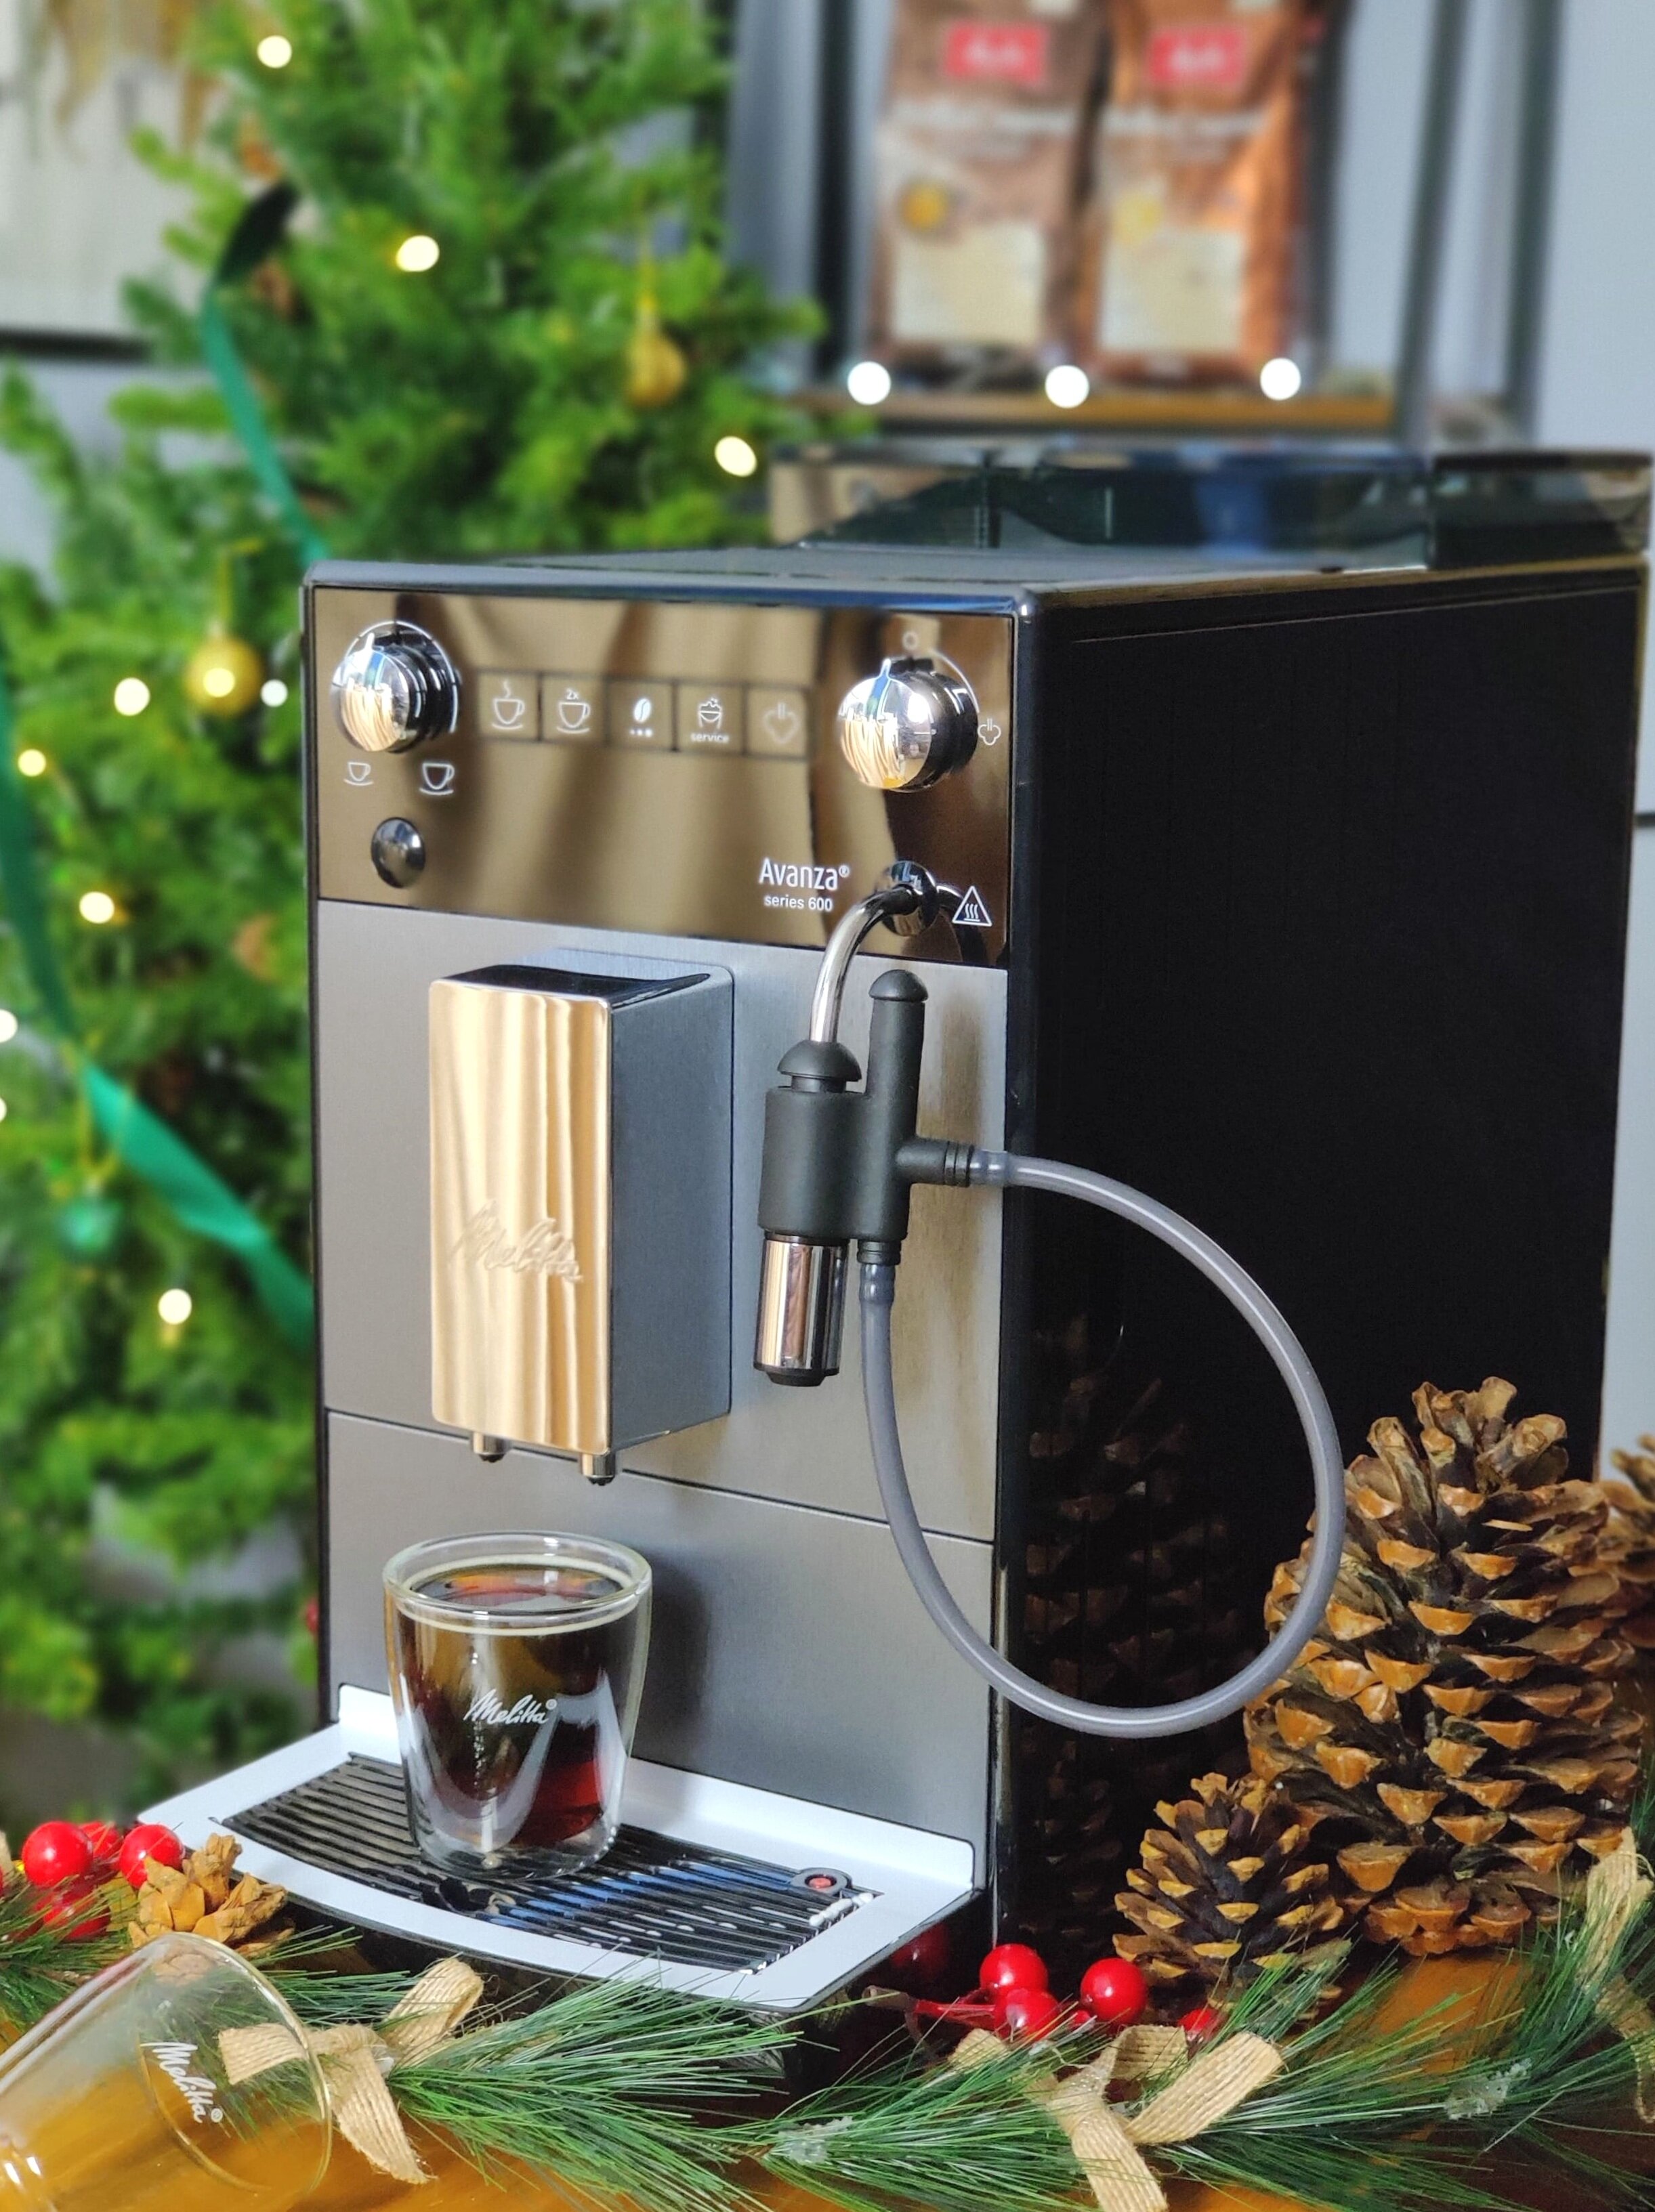 Melitta Barista TS Smart Home espresso machine